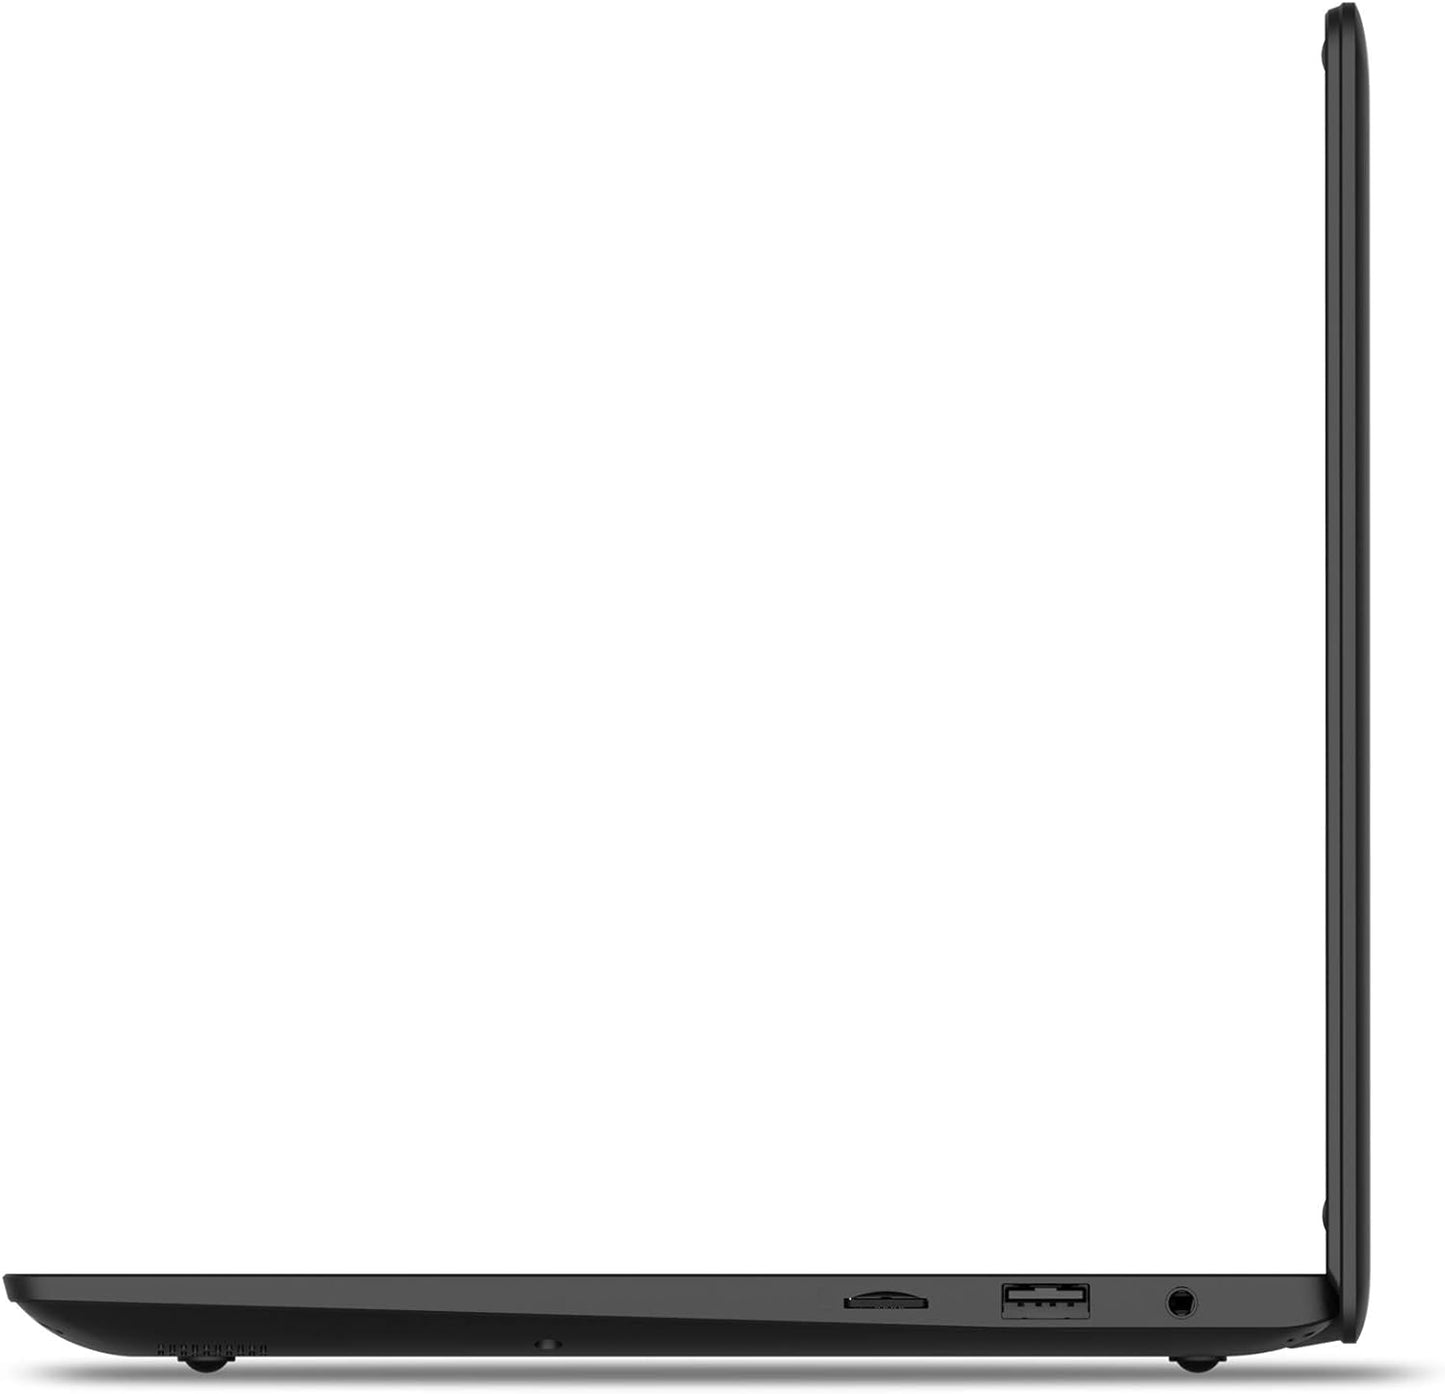 Packard Bell cloudBook 11.6" IPS HD Laptop, Intel Celeron N3450, 4GB, 64GB, Windows 10 Home, N11250BK